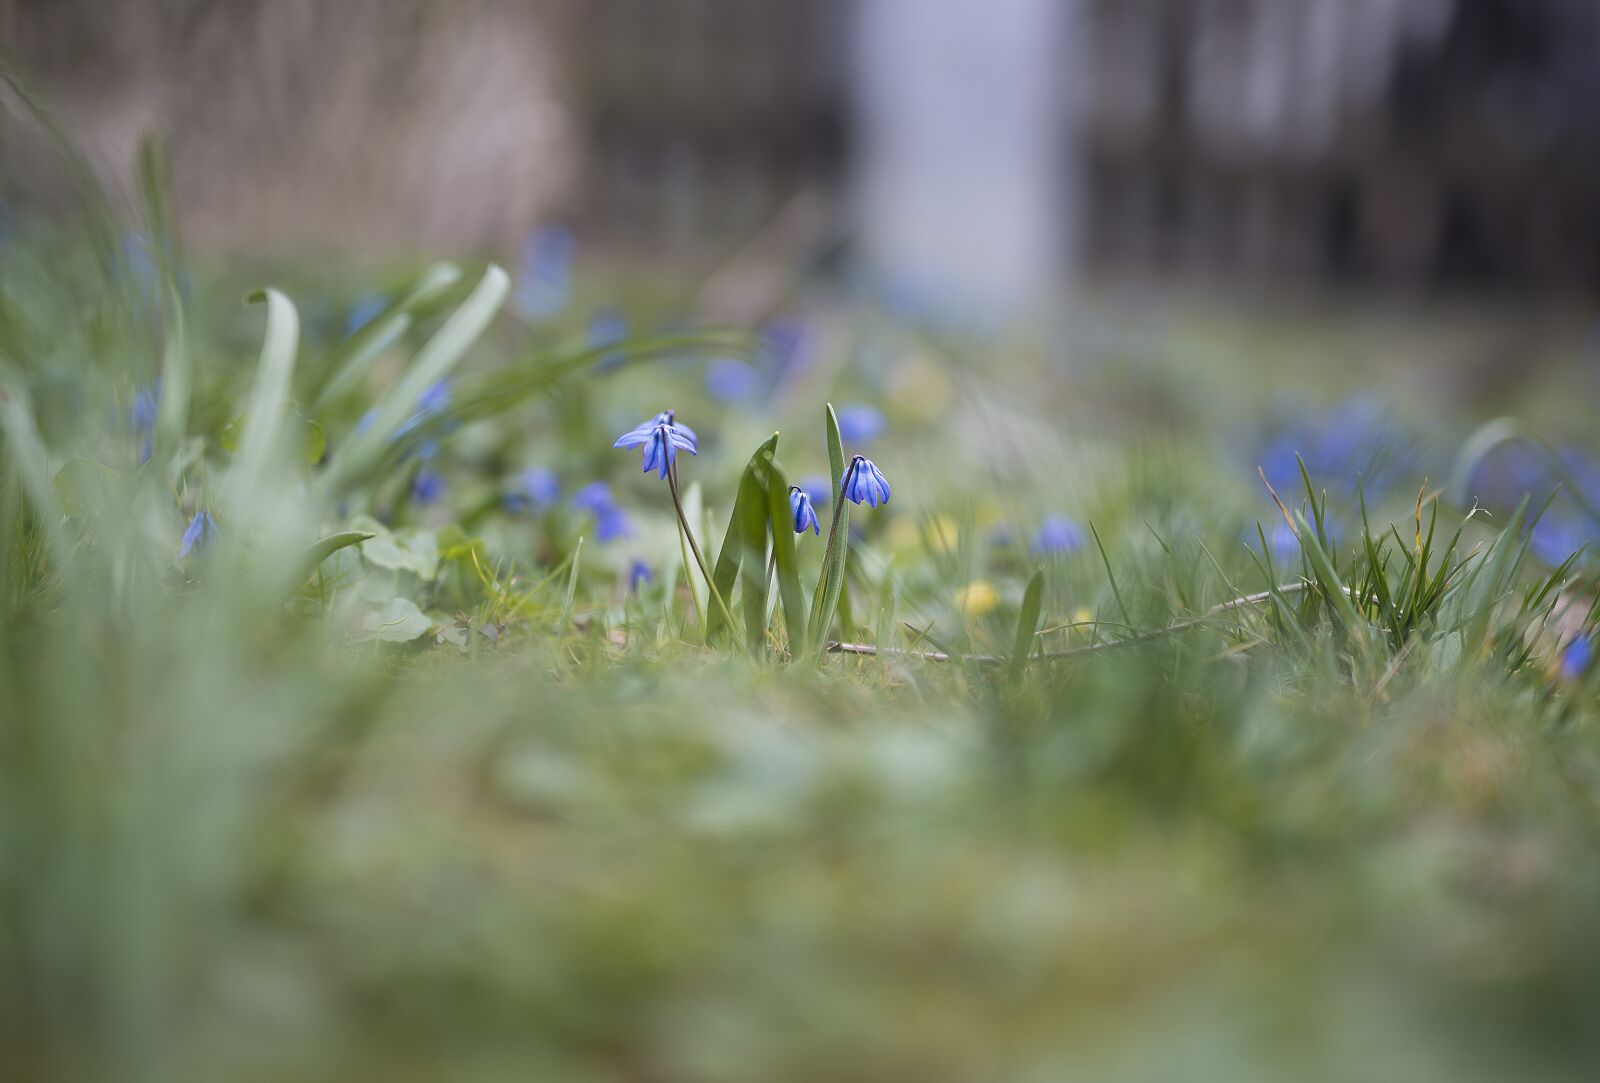 Nikon D800E sample photo. Muscari, spring, garden photography